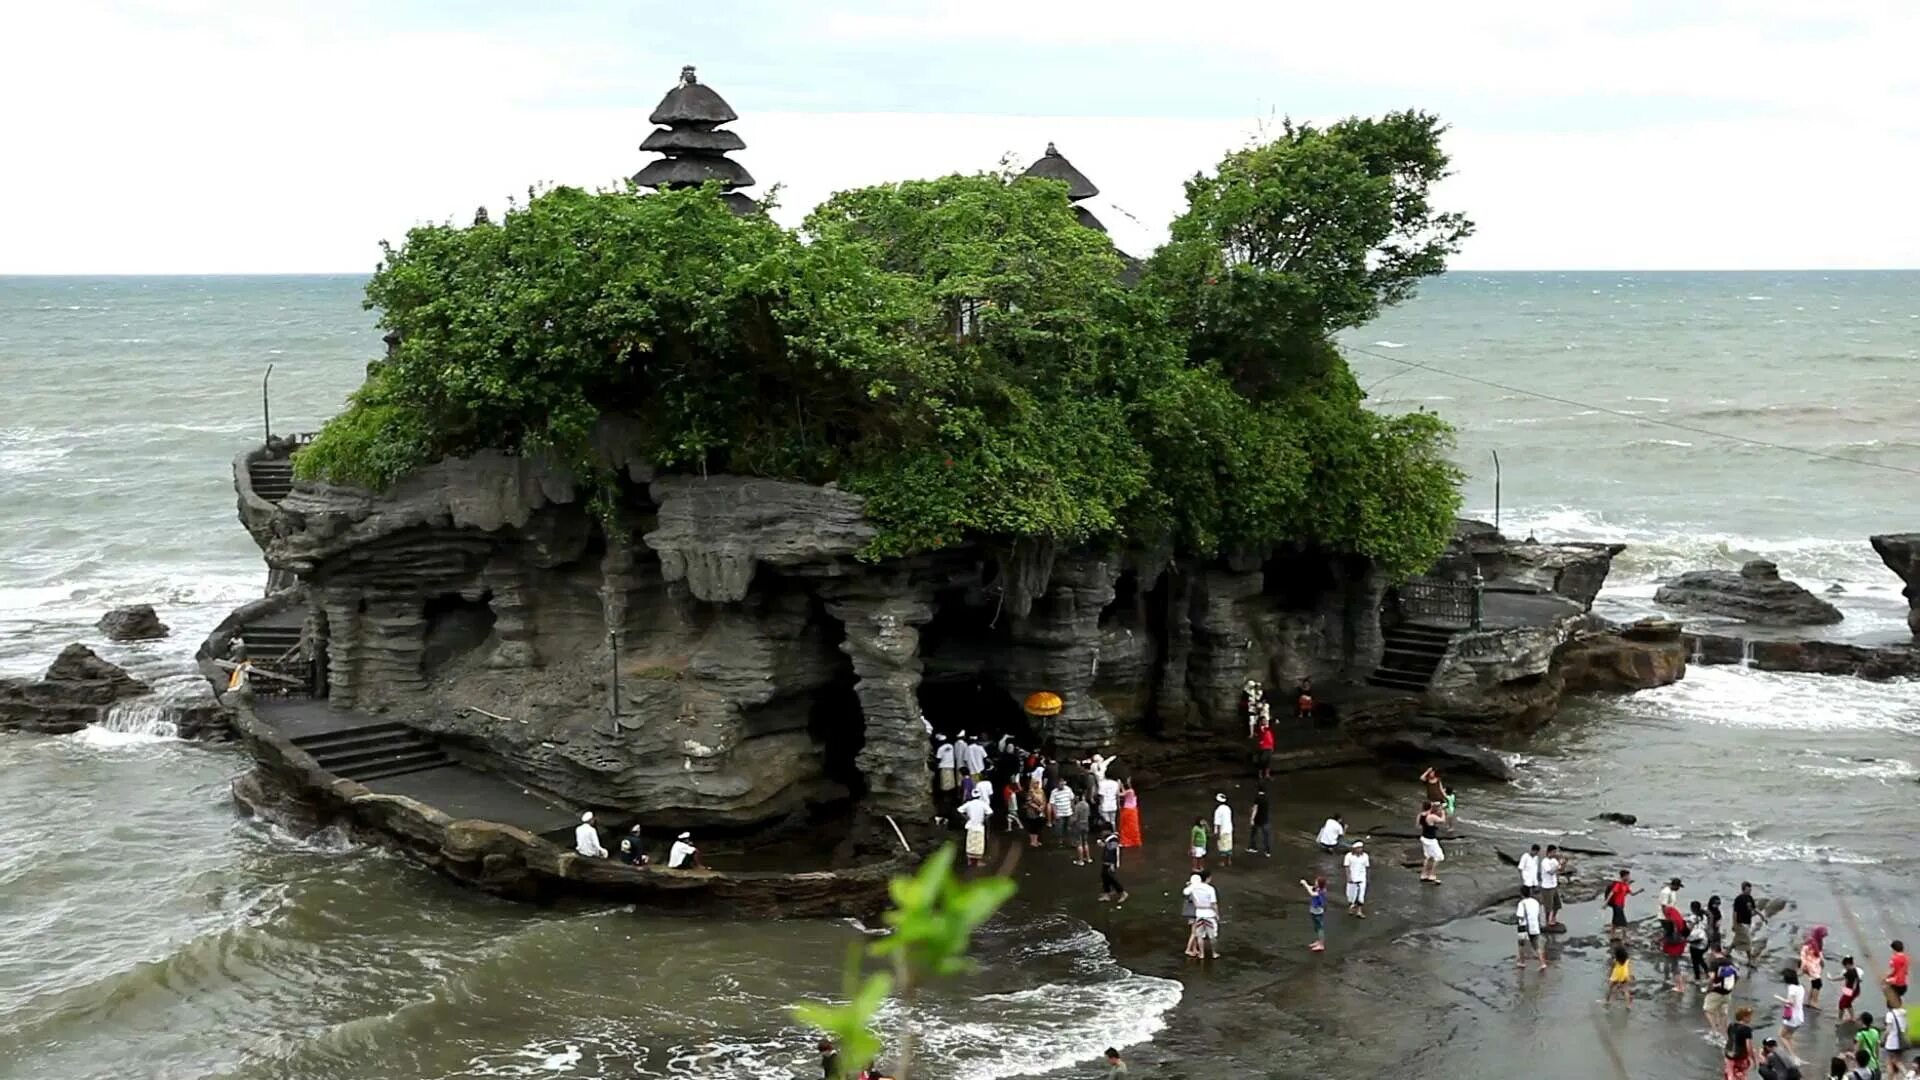 Площадь бали. Храм Пура Танах лот. Пура Танах лот Бали. Бали площадь острова. Табанан остров Бали.